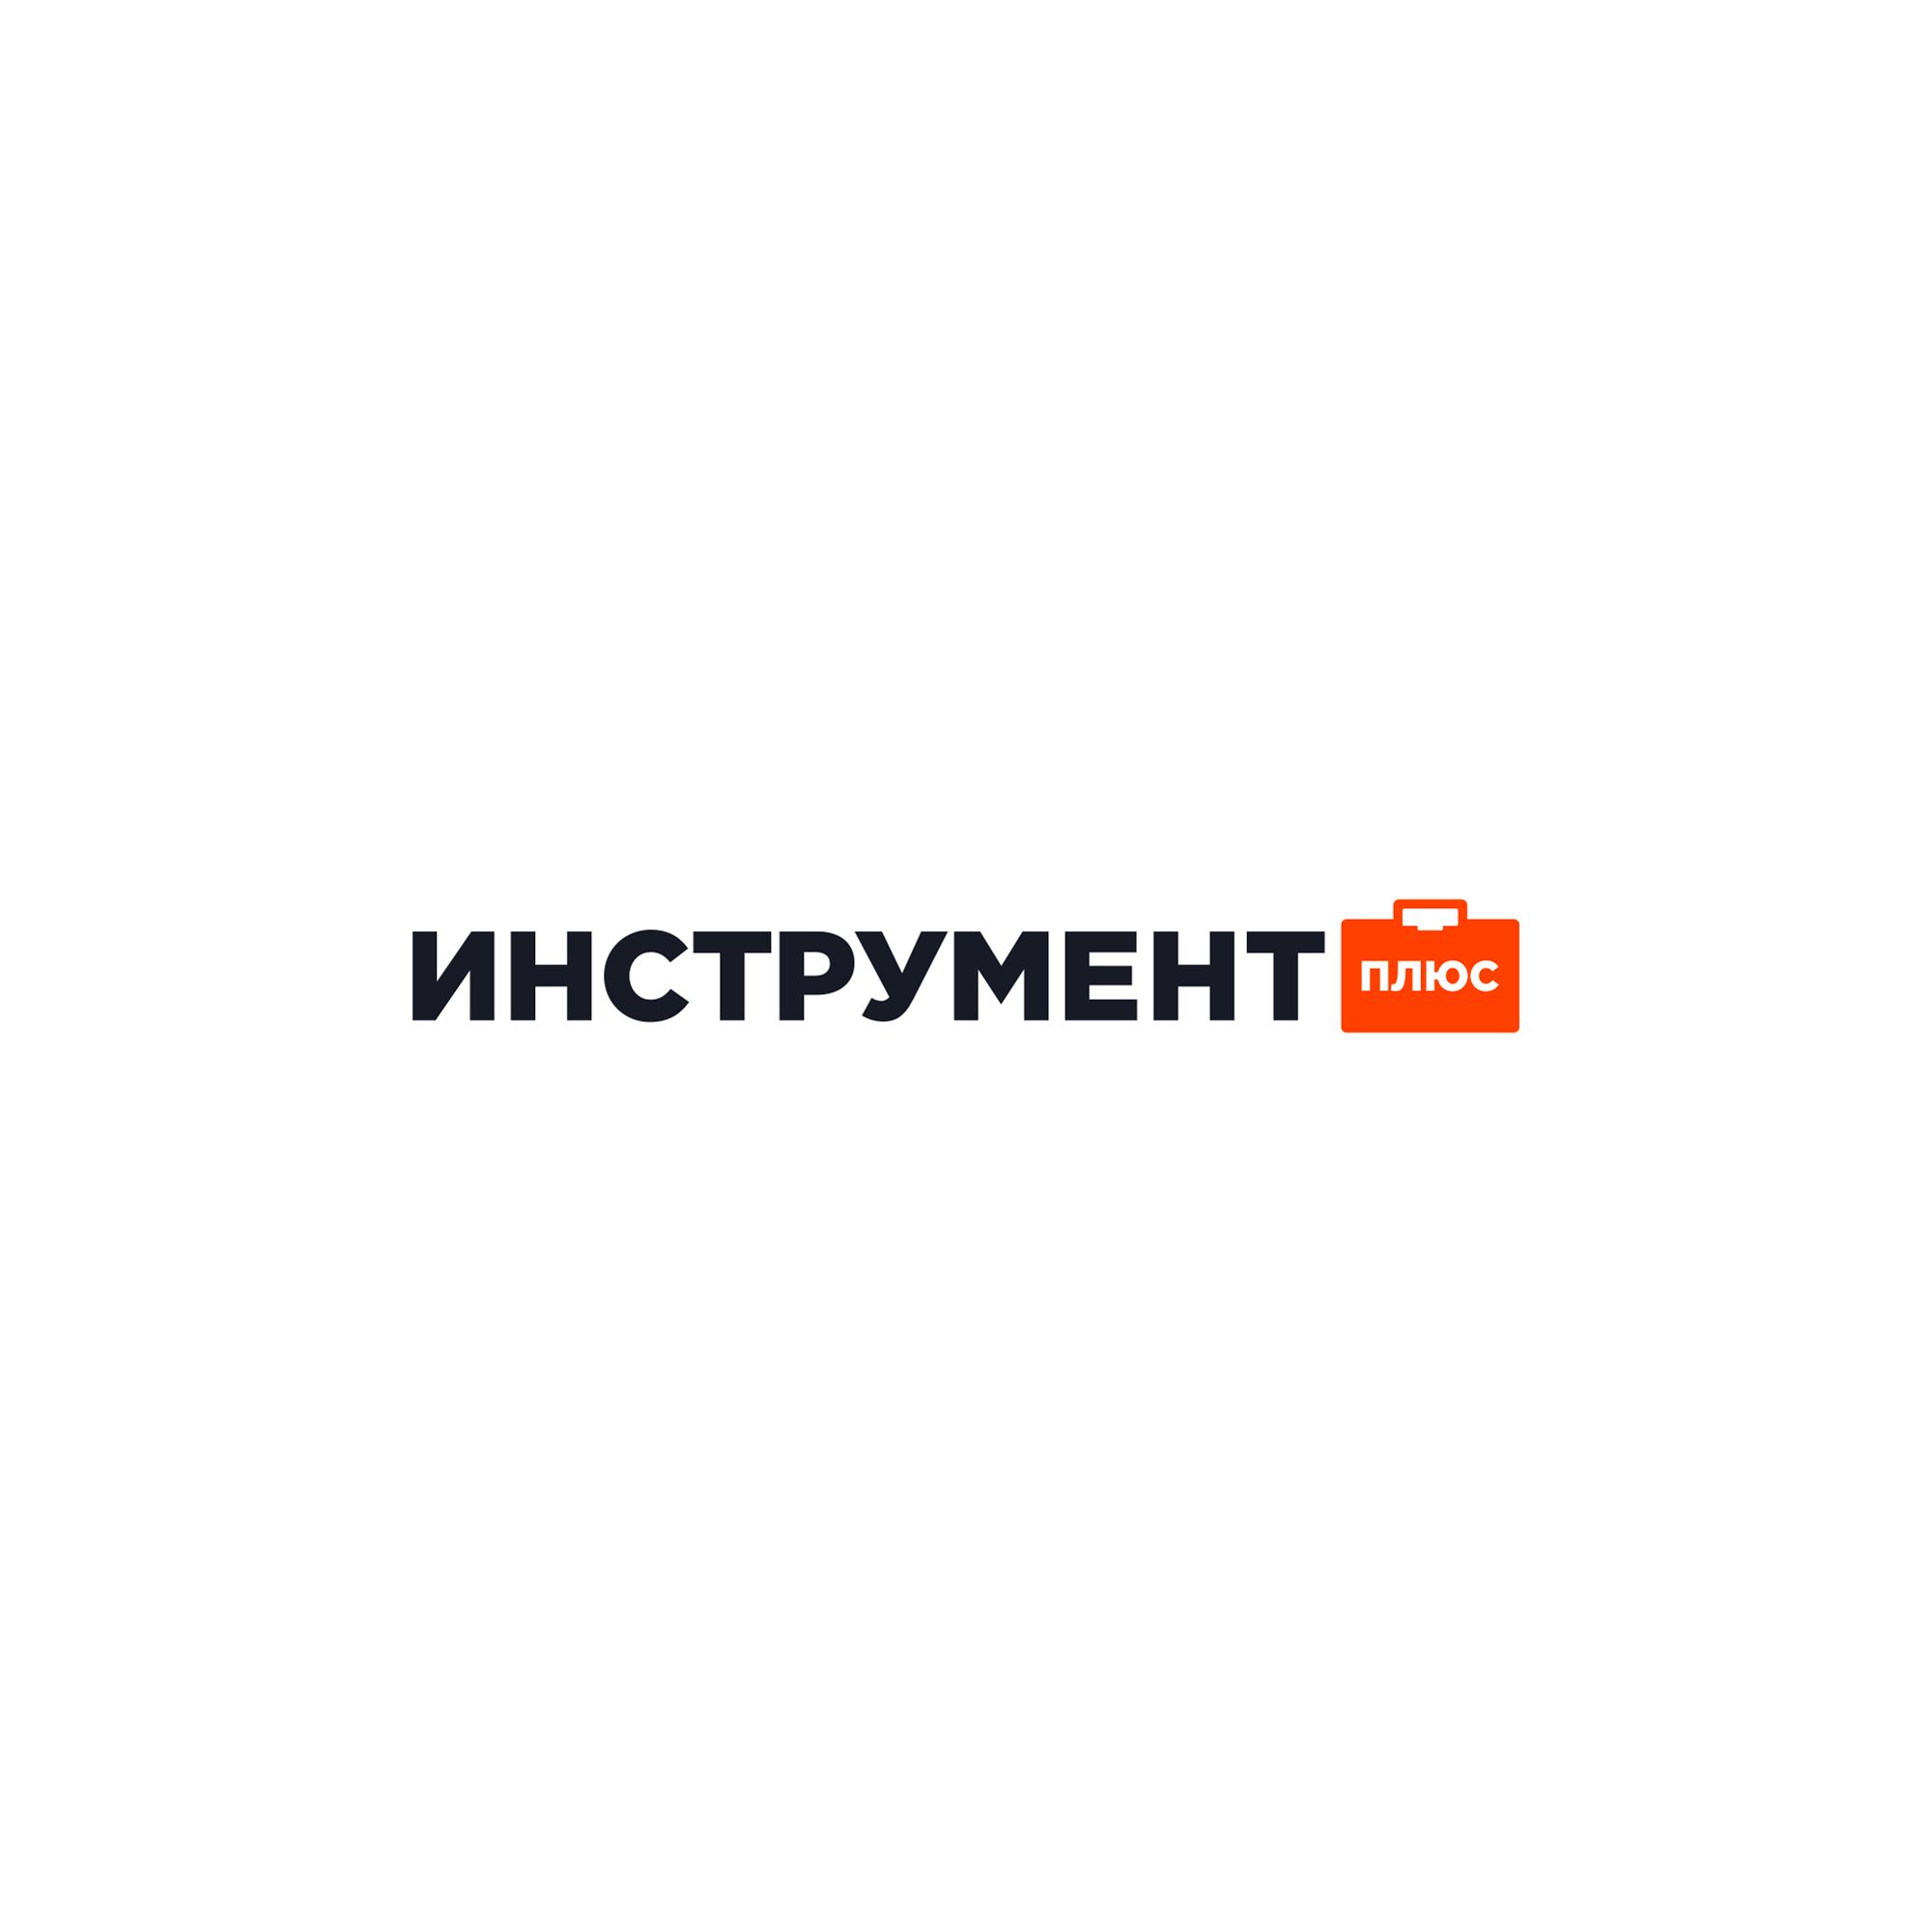 Логотип для Инструмент плюс - дизайнер Sashka_K